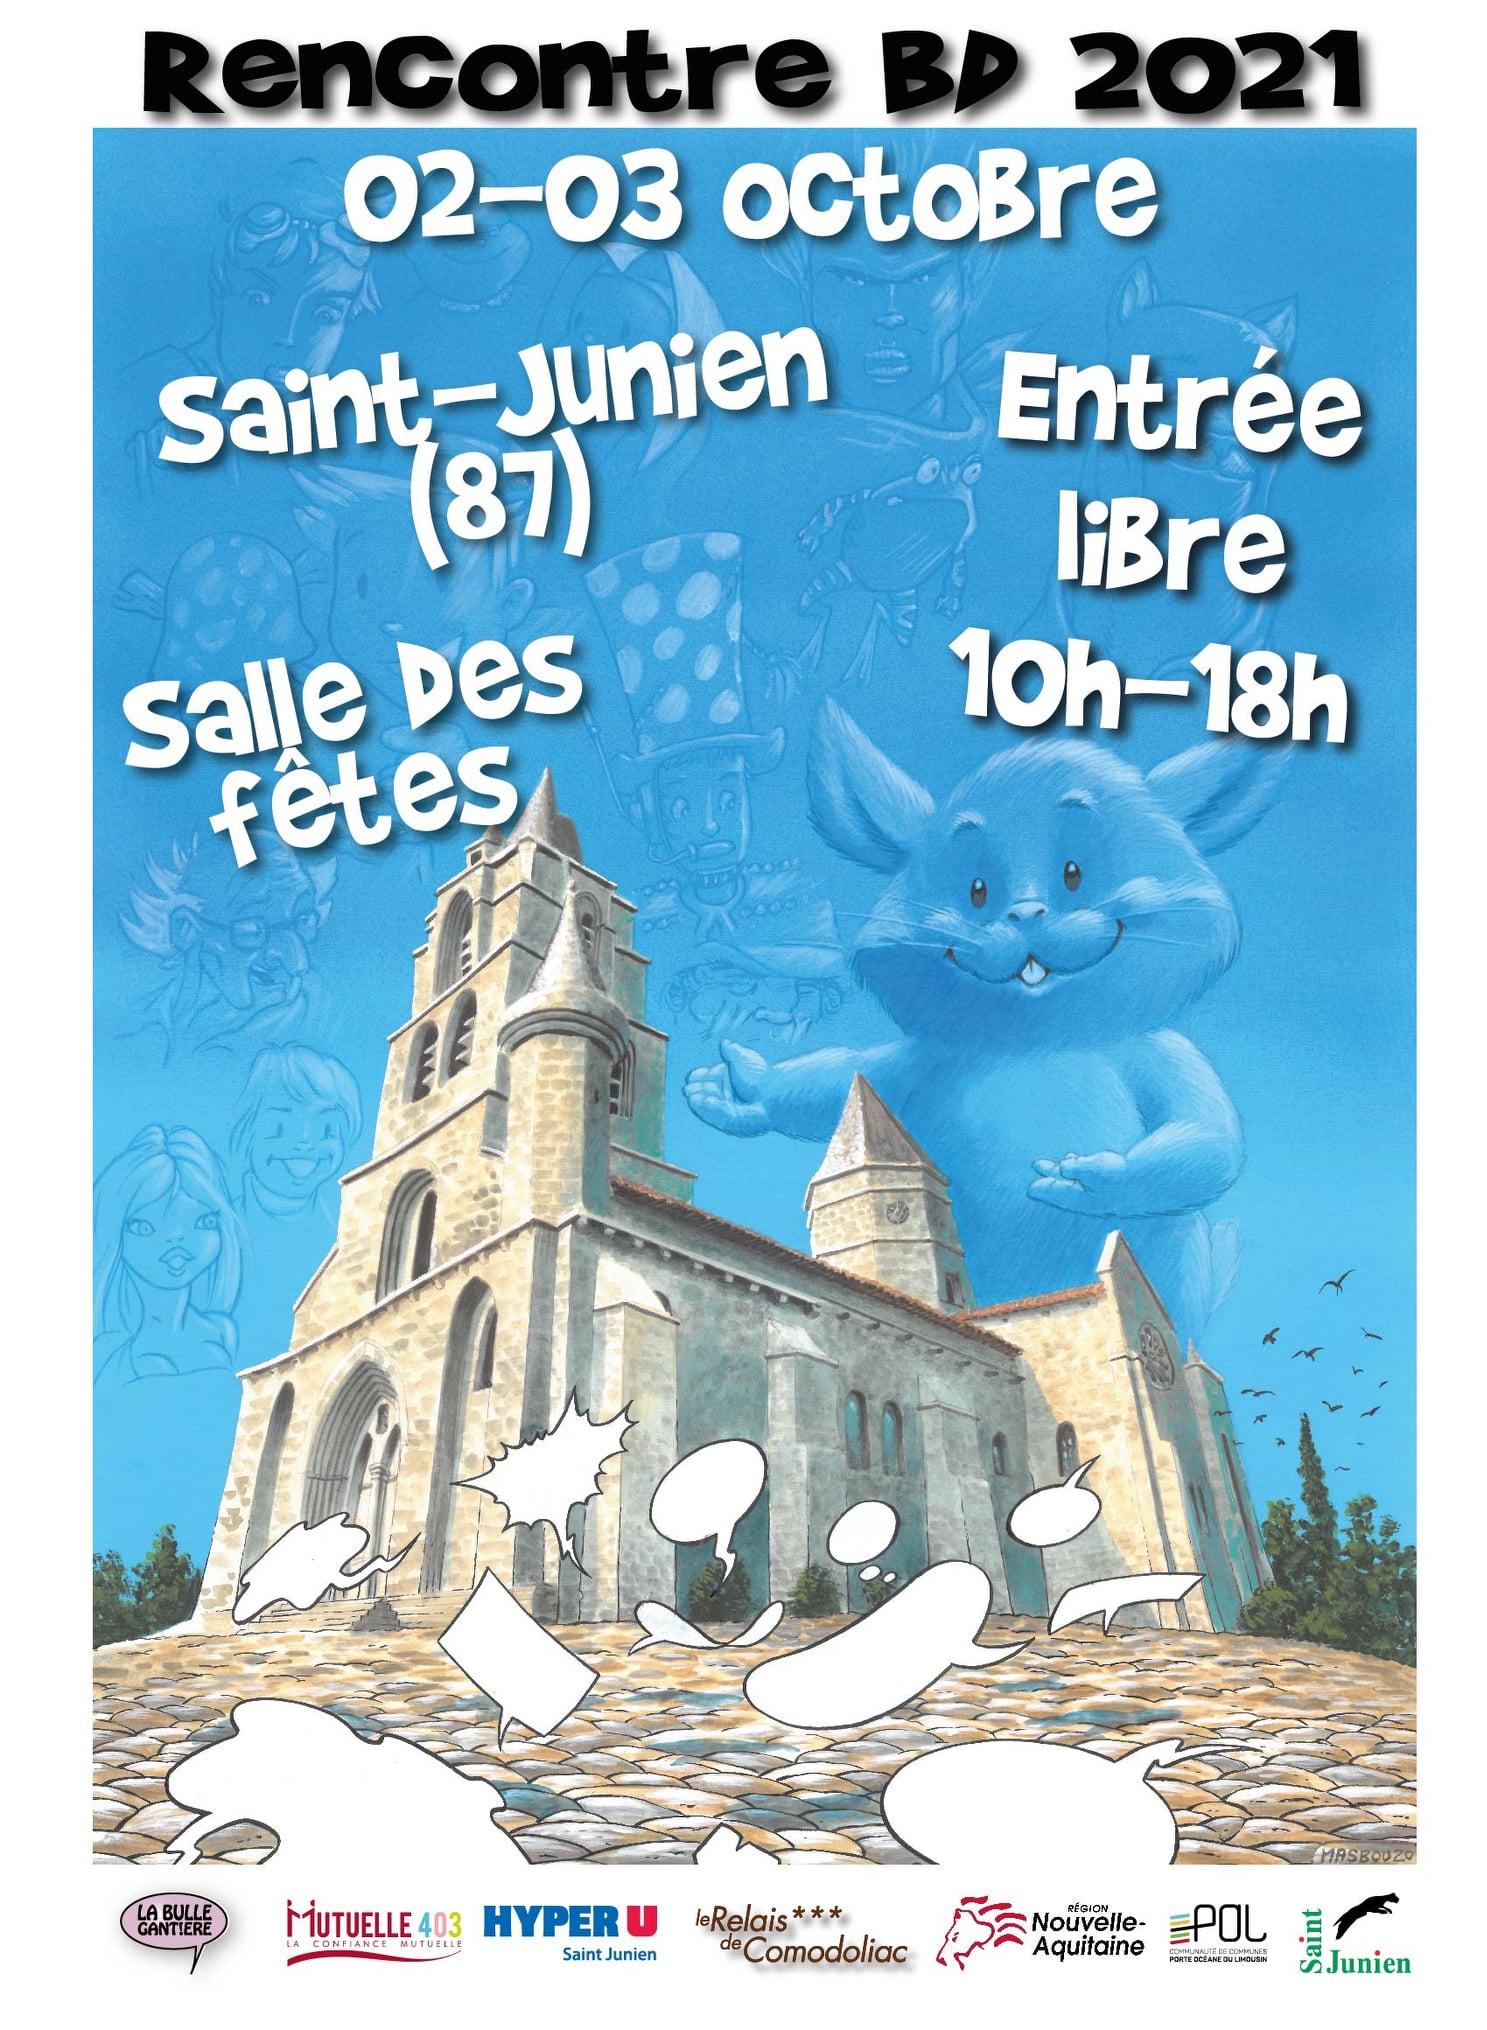 Les 13ème Rencontres BD de Saint-Junien les 2 et 3 Octobre